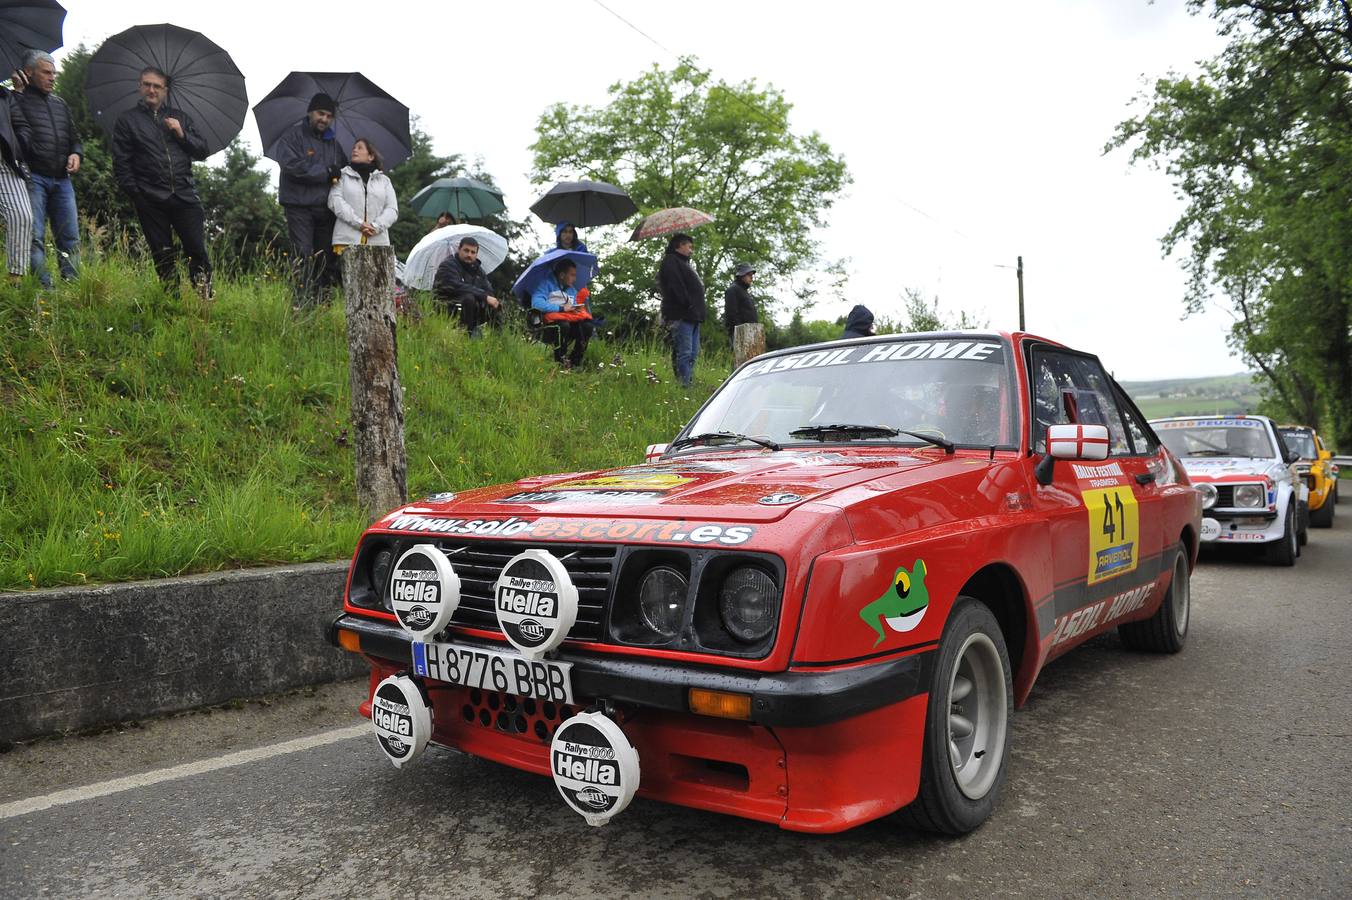 El Rally Trasmiera volvió a ser una auténtica fiesta de los clásicos sobre el asfalto, que ni la lluvia consiguió desluciar.